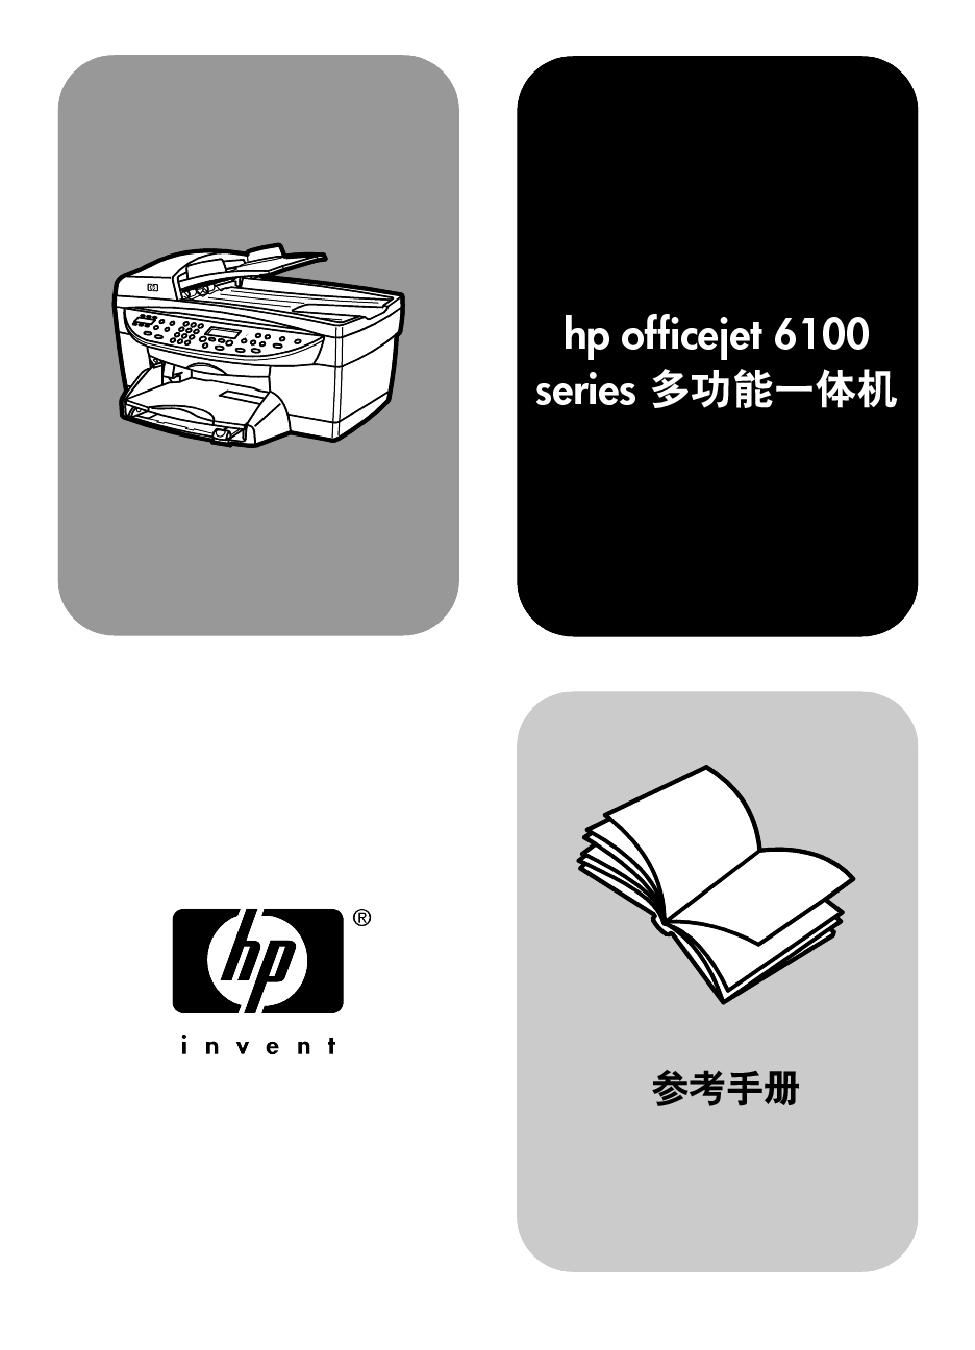 惠普 HP Officejet 6100 用户参考手册 封面